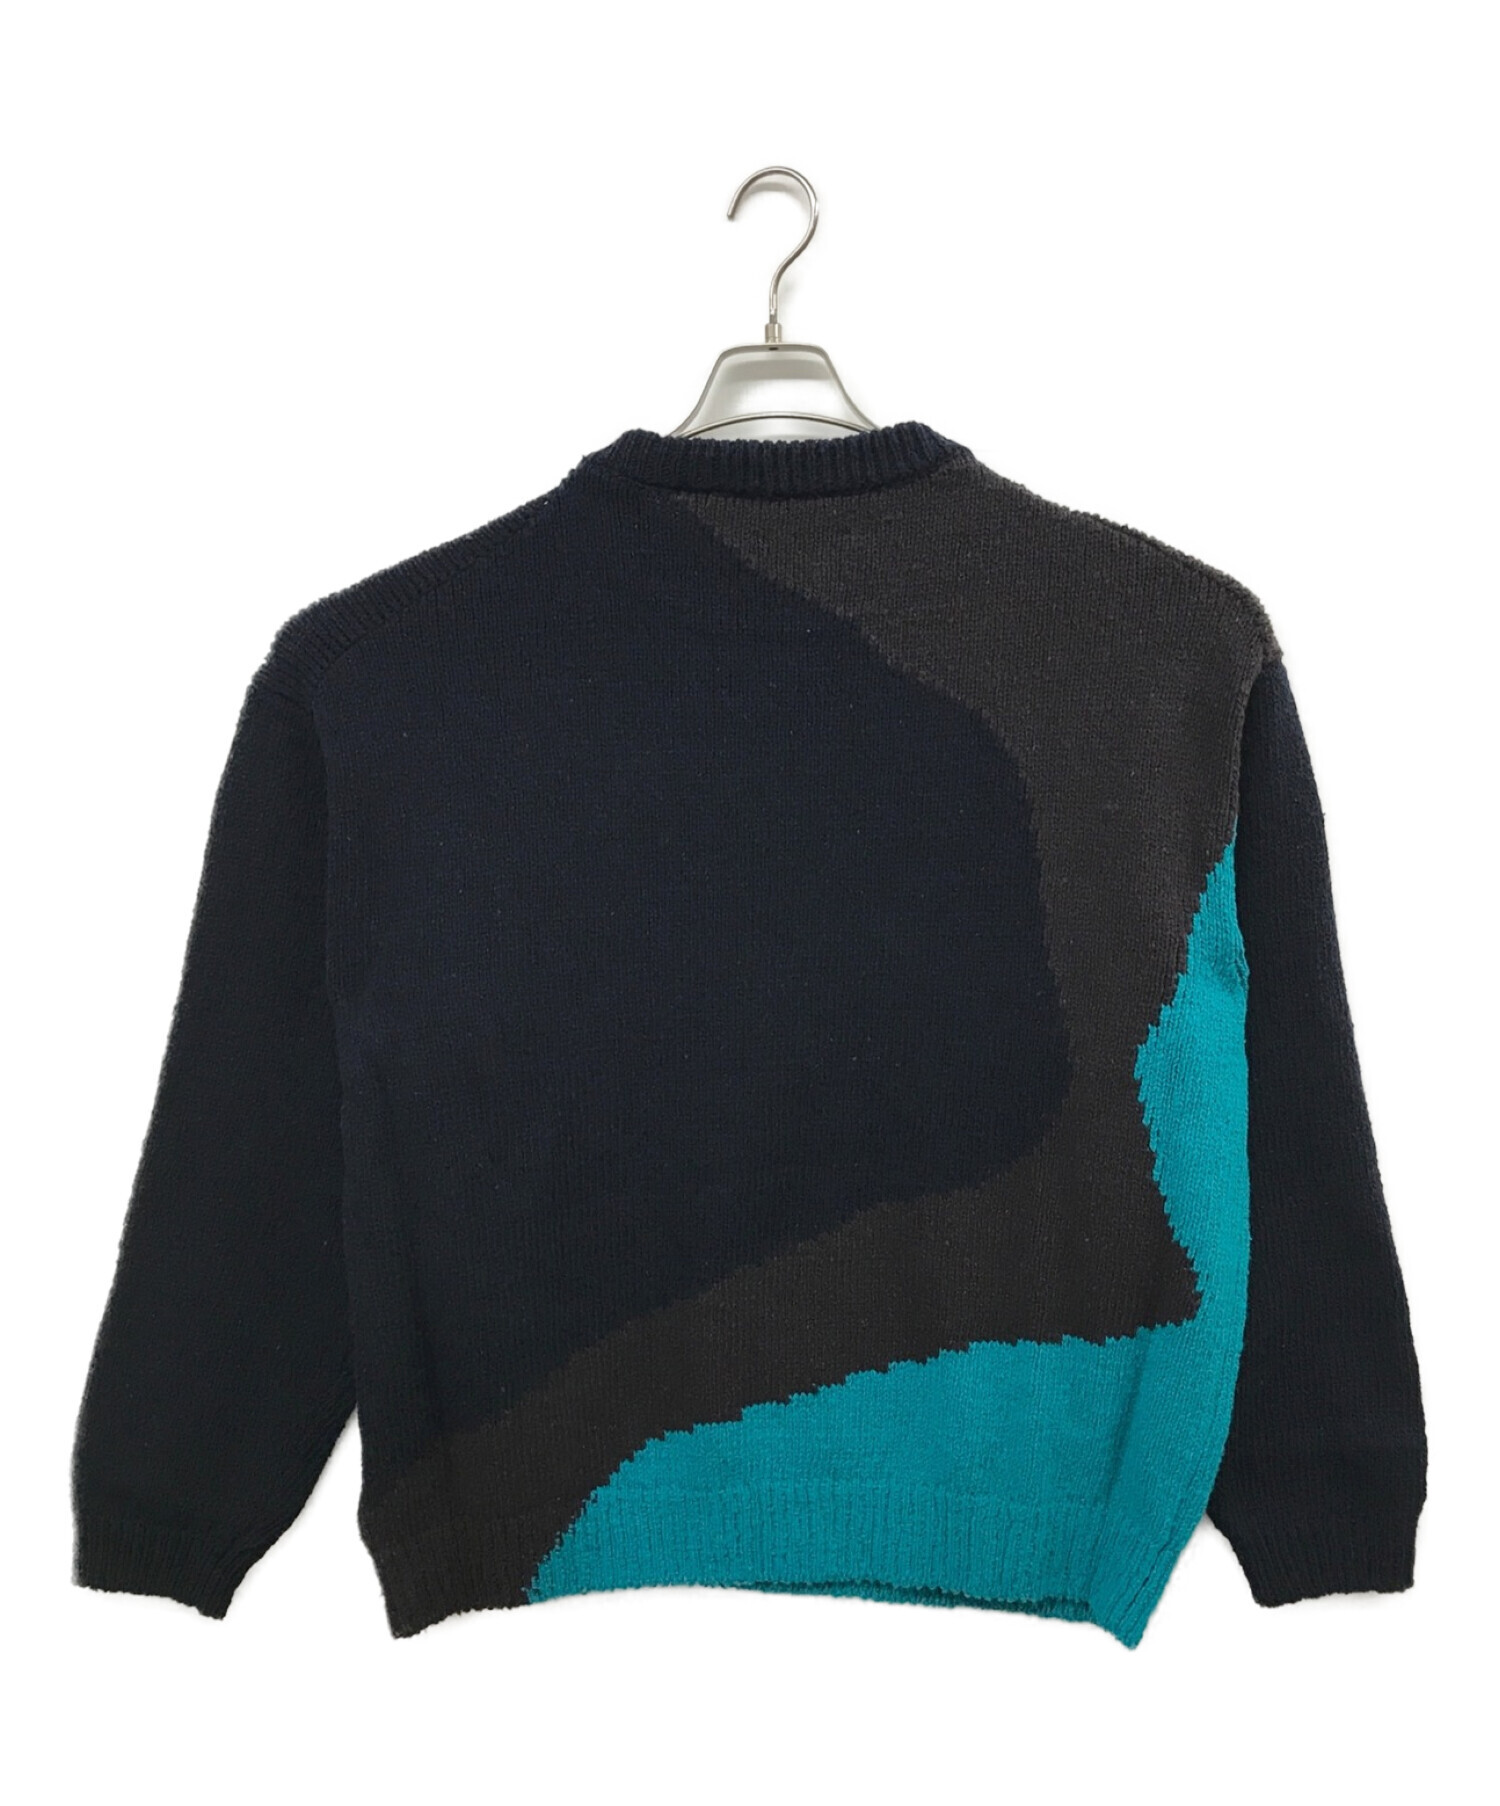 YOKE (ヨーク) Intarsia Cotton Sweater ネイビー サイズ:2